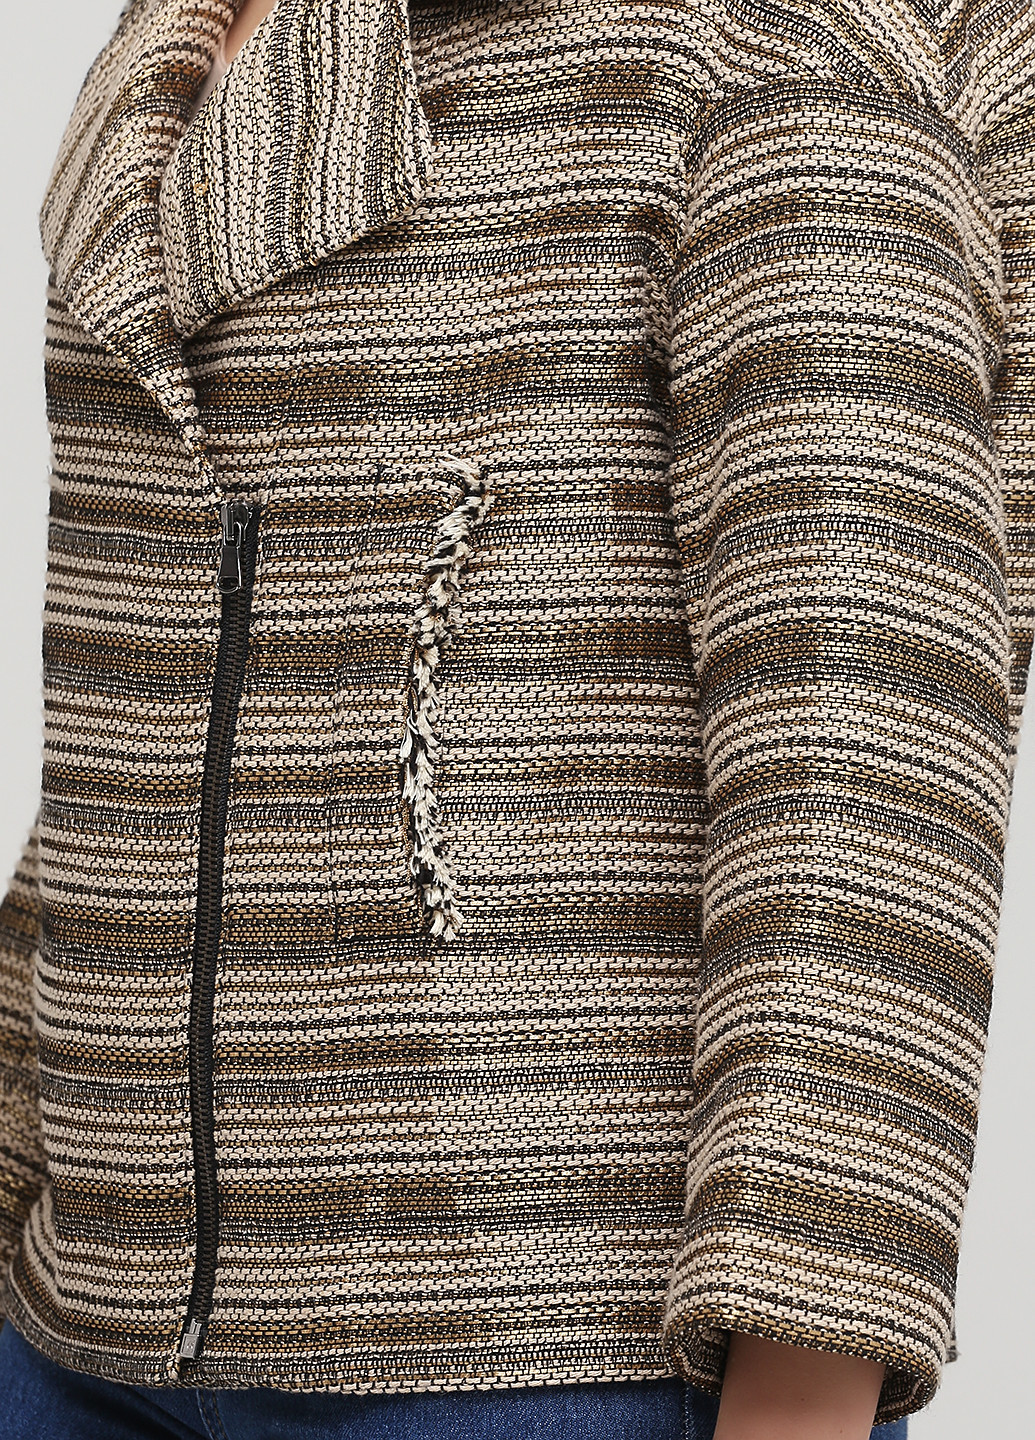 Бежевый женский жакет Sisley полосатый - демисезонный